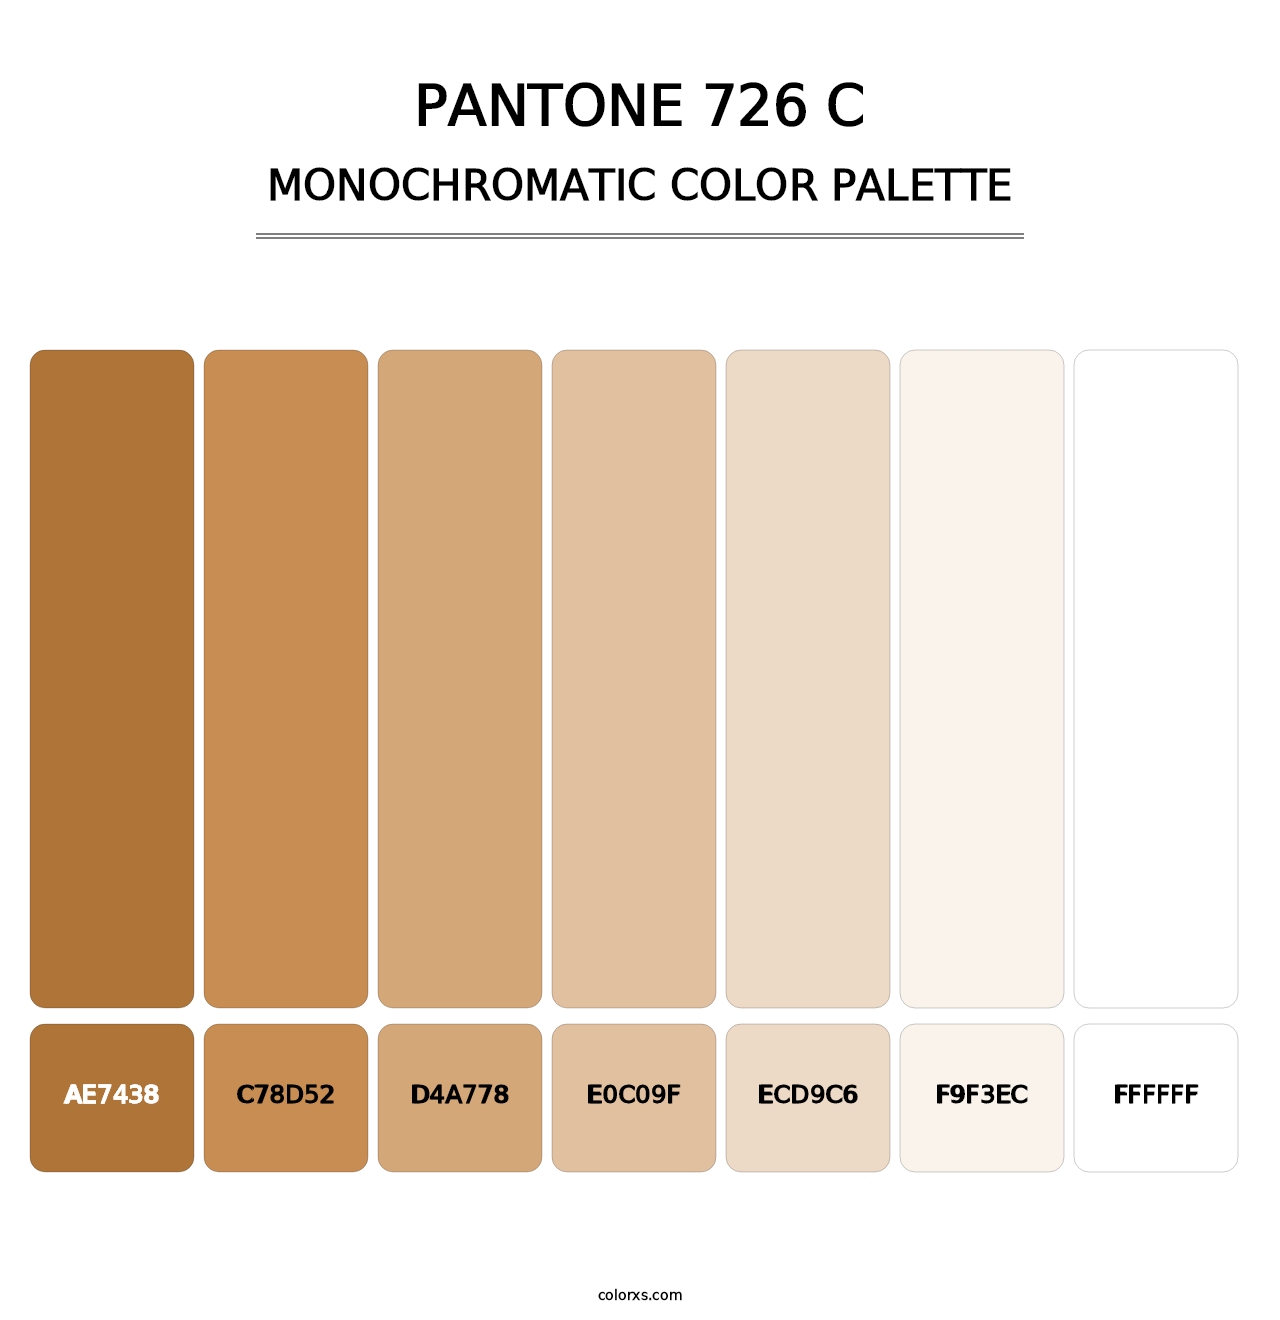 PANTONE 726 C - Monochromatic Color Palette